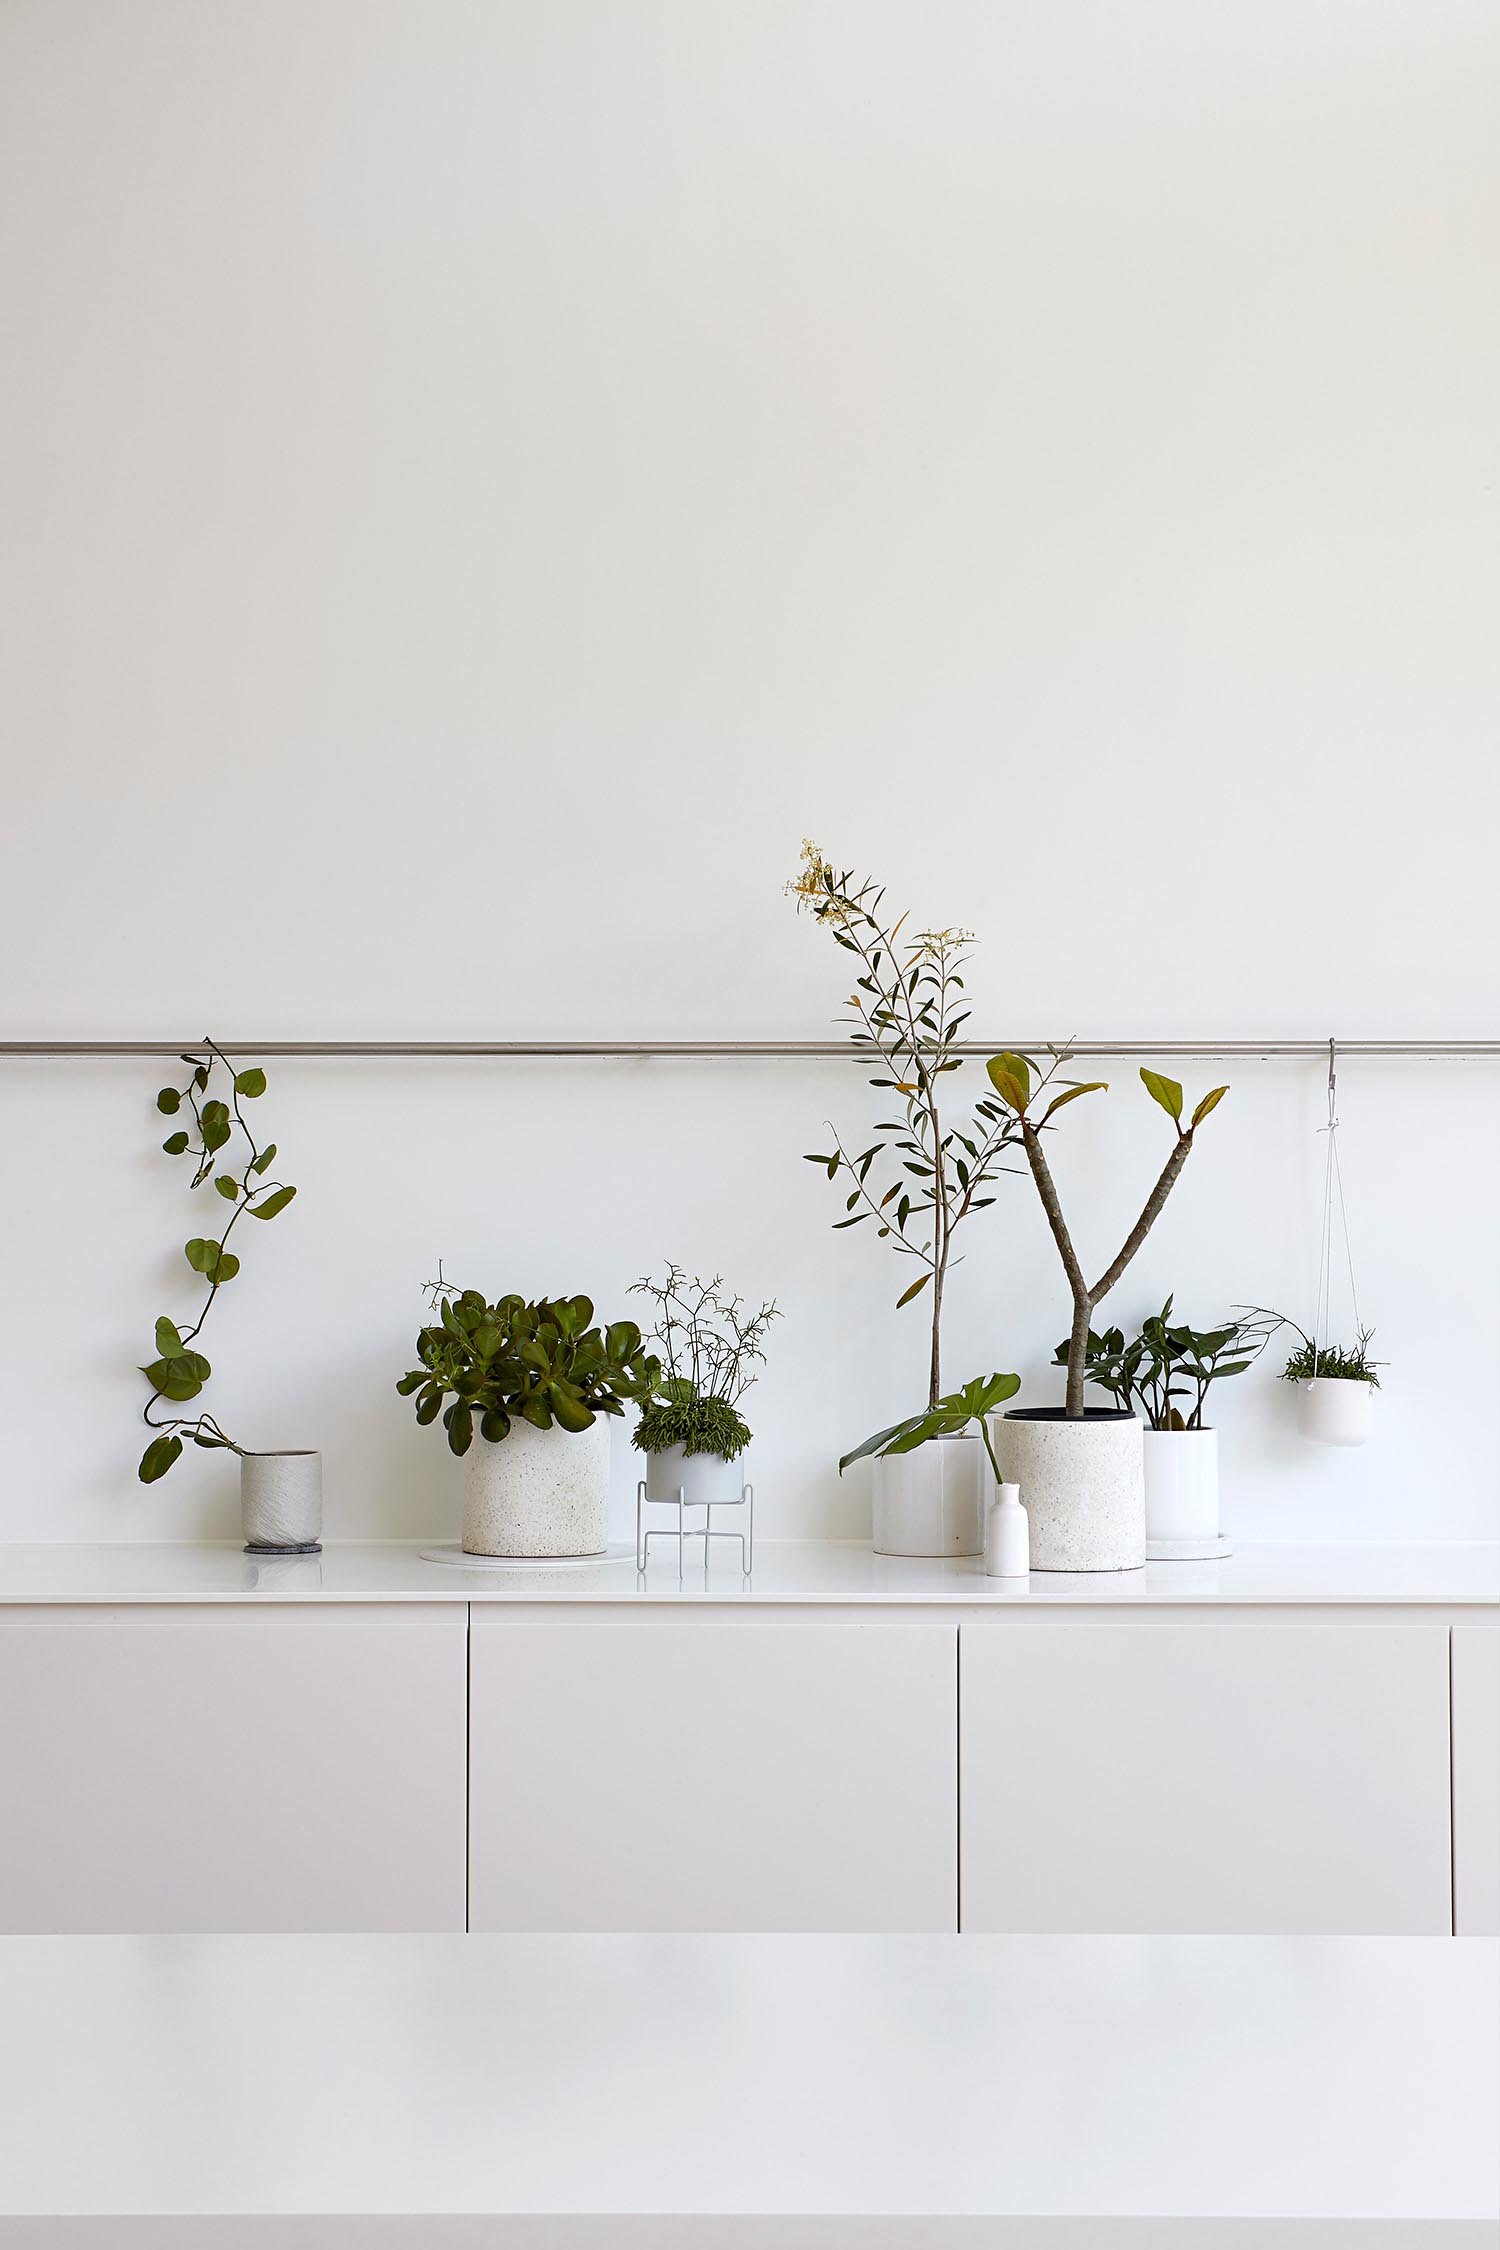 Современные кухонные шкафы с горшечными растениями в качестве украшения.